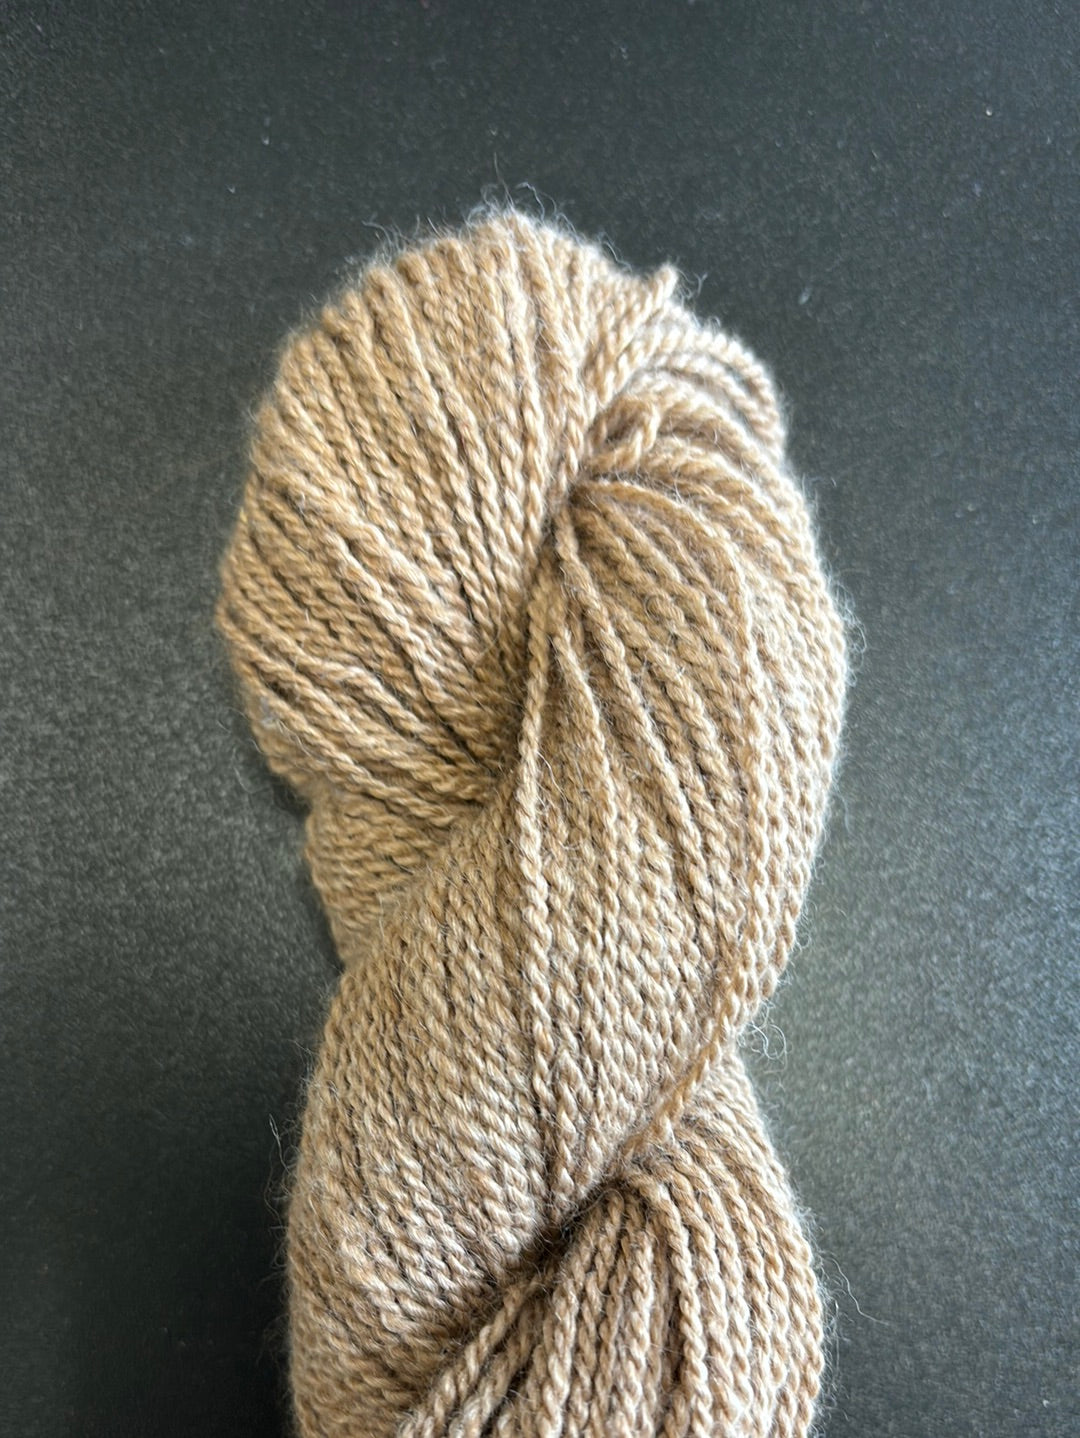 Tan alpaca yarn